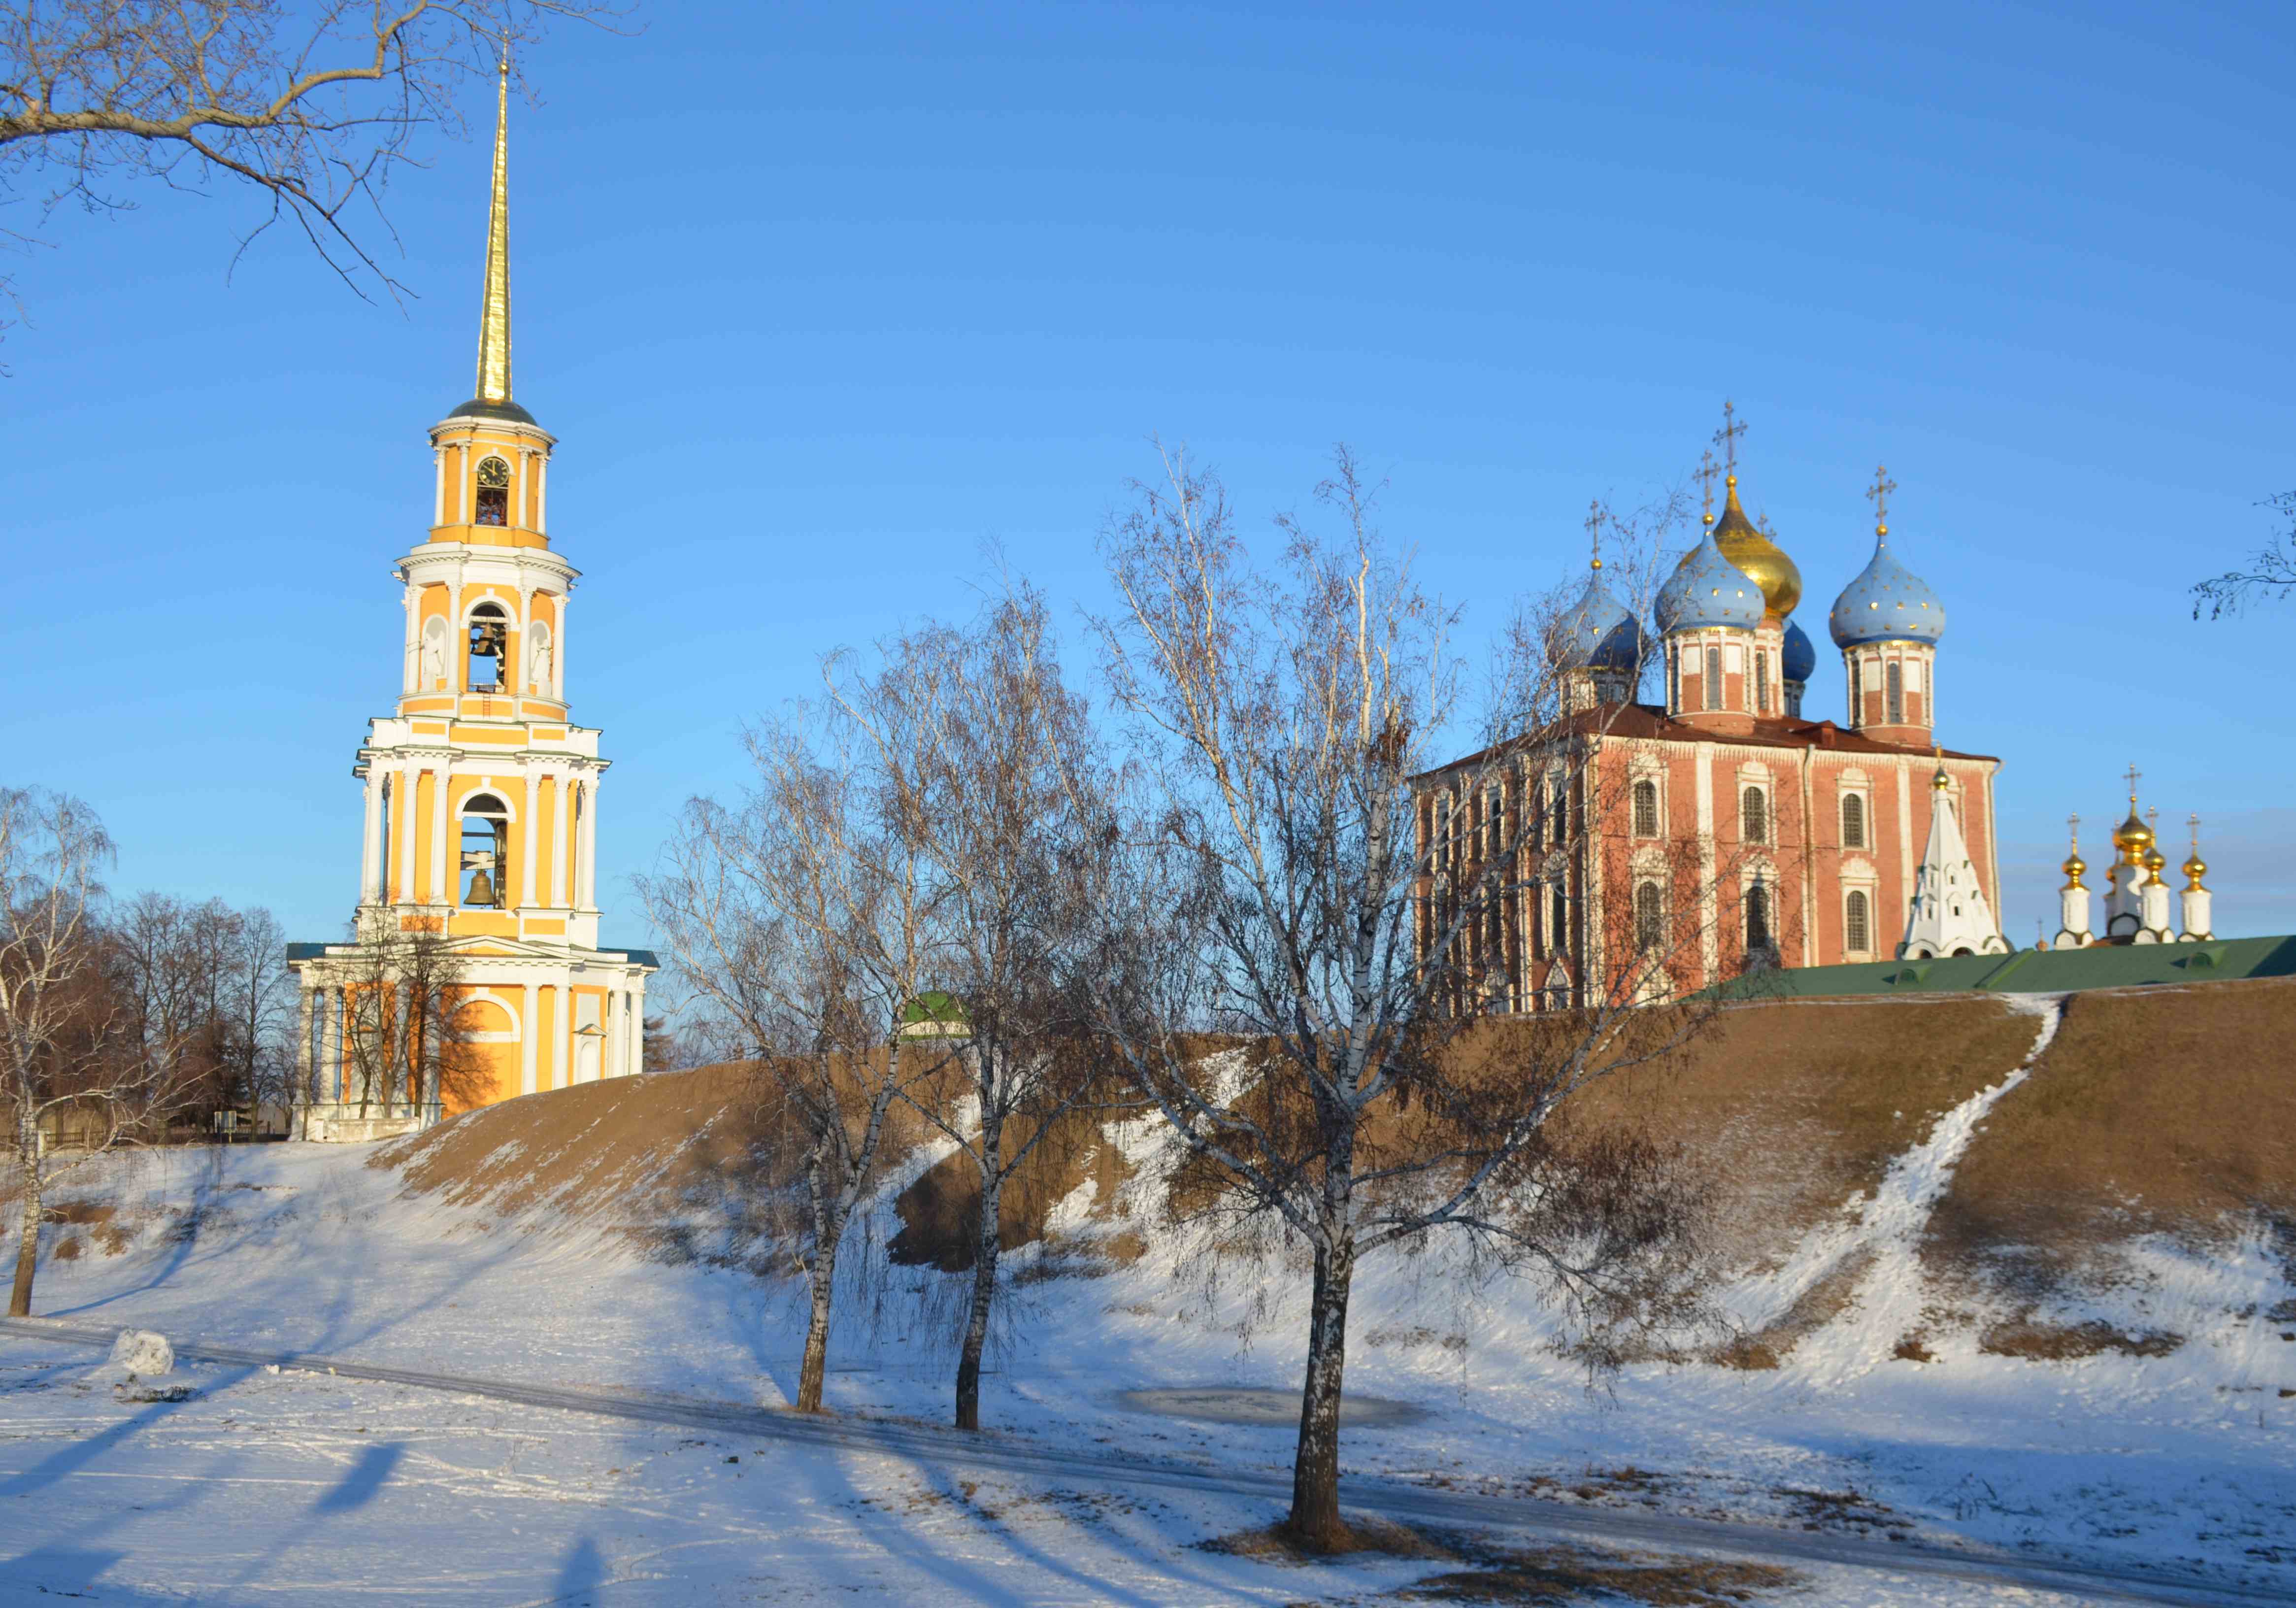 Рязанский кремль станет достопримечательным местом